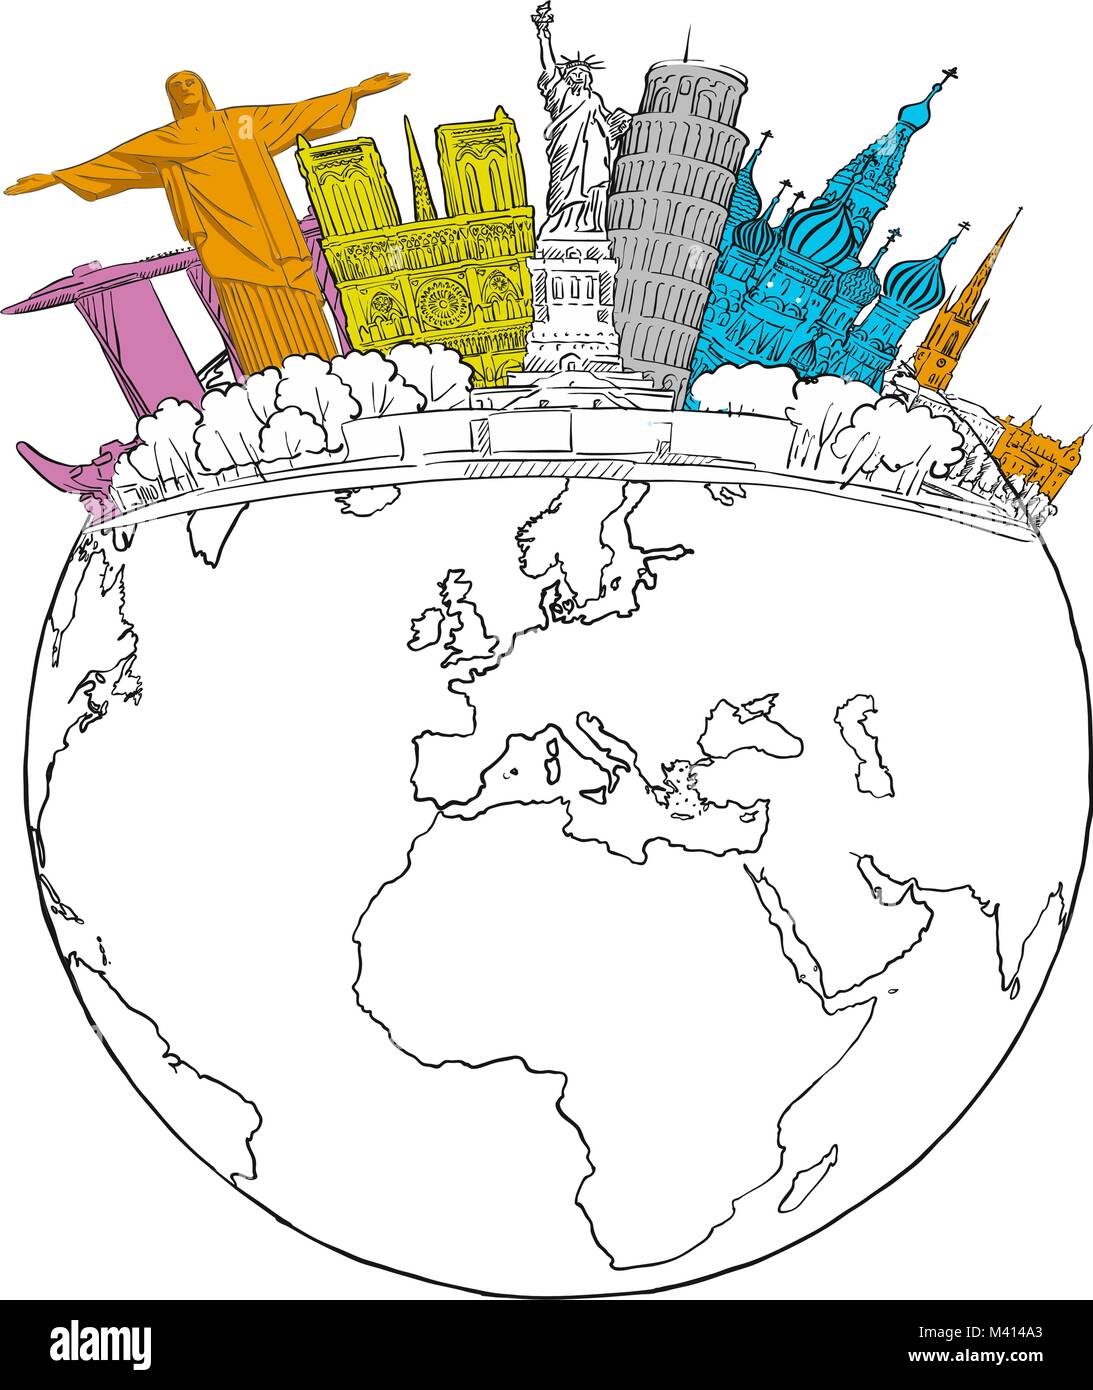 Reisen zu den Sehenswürdigkeiten auf der ganzen Welt. Tourismus Skizze Konzept mit skizziert Earth Globus. Reisen Vector Illustration. Handgezeichneten moderne Zeichnung. Stock Vektor